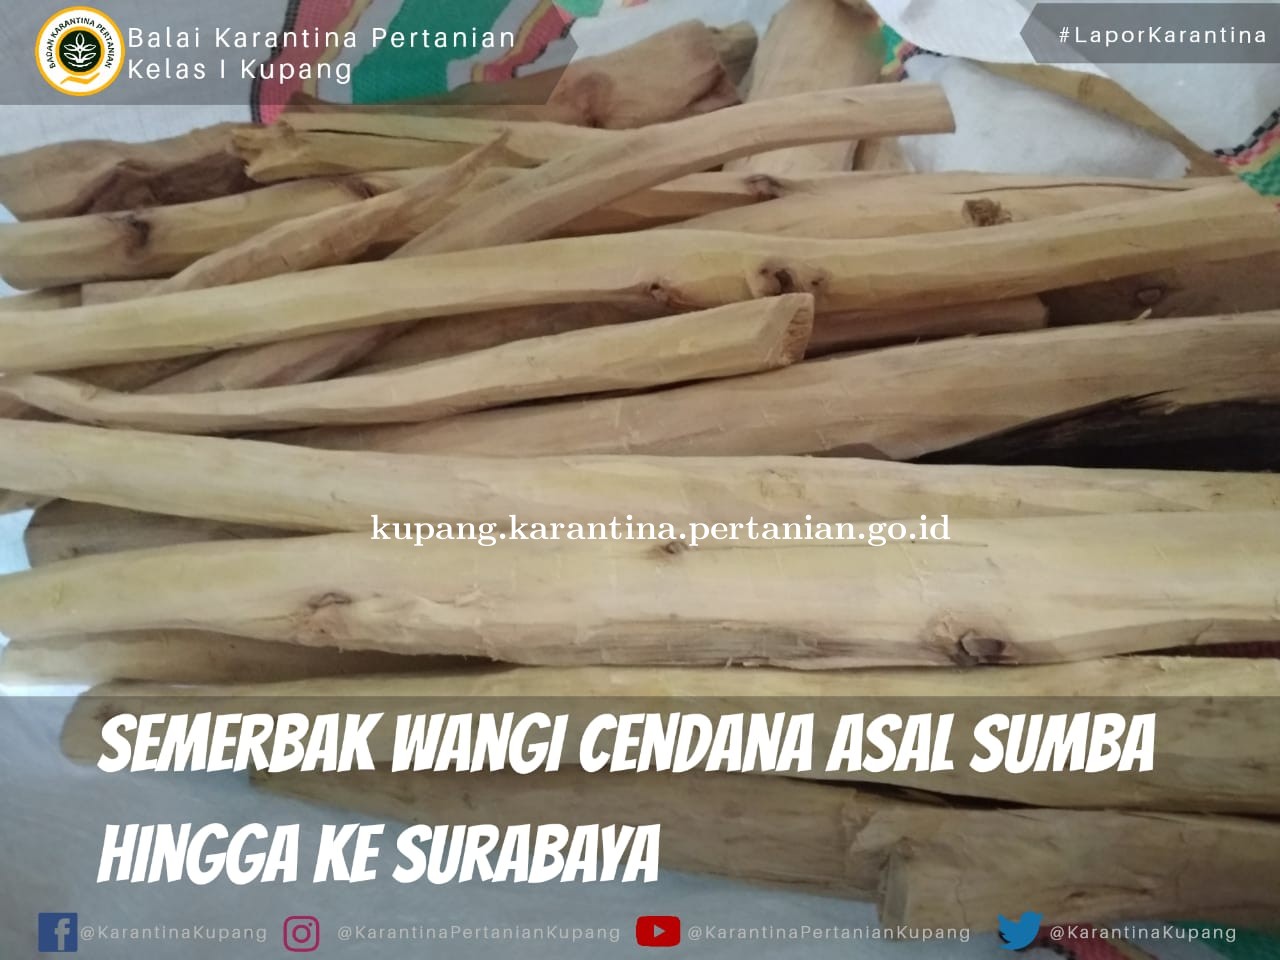 Semerbak Wangi Cendana Sumba Hingga ke Surabaya